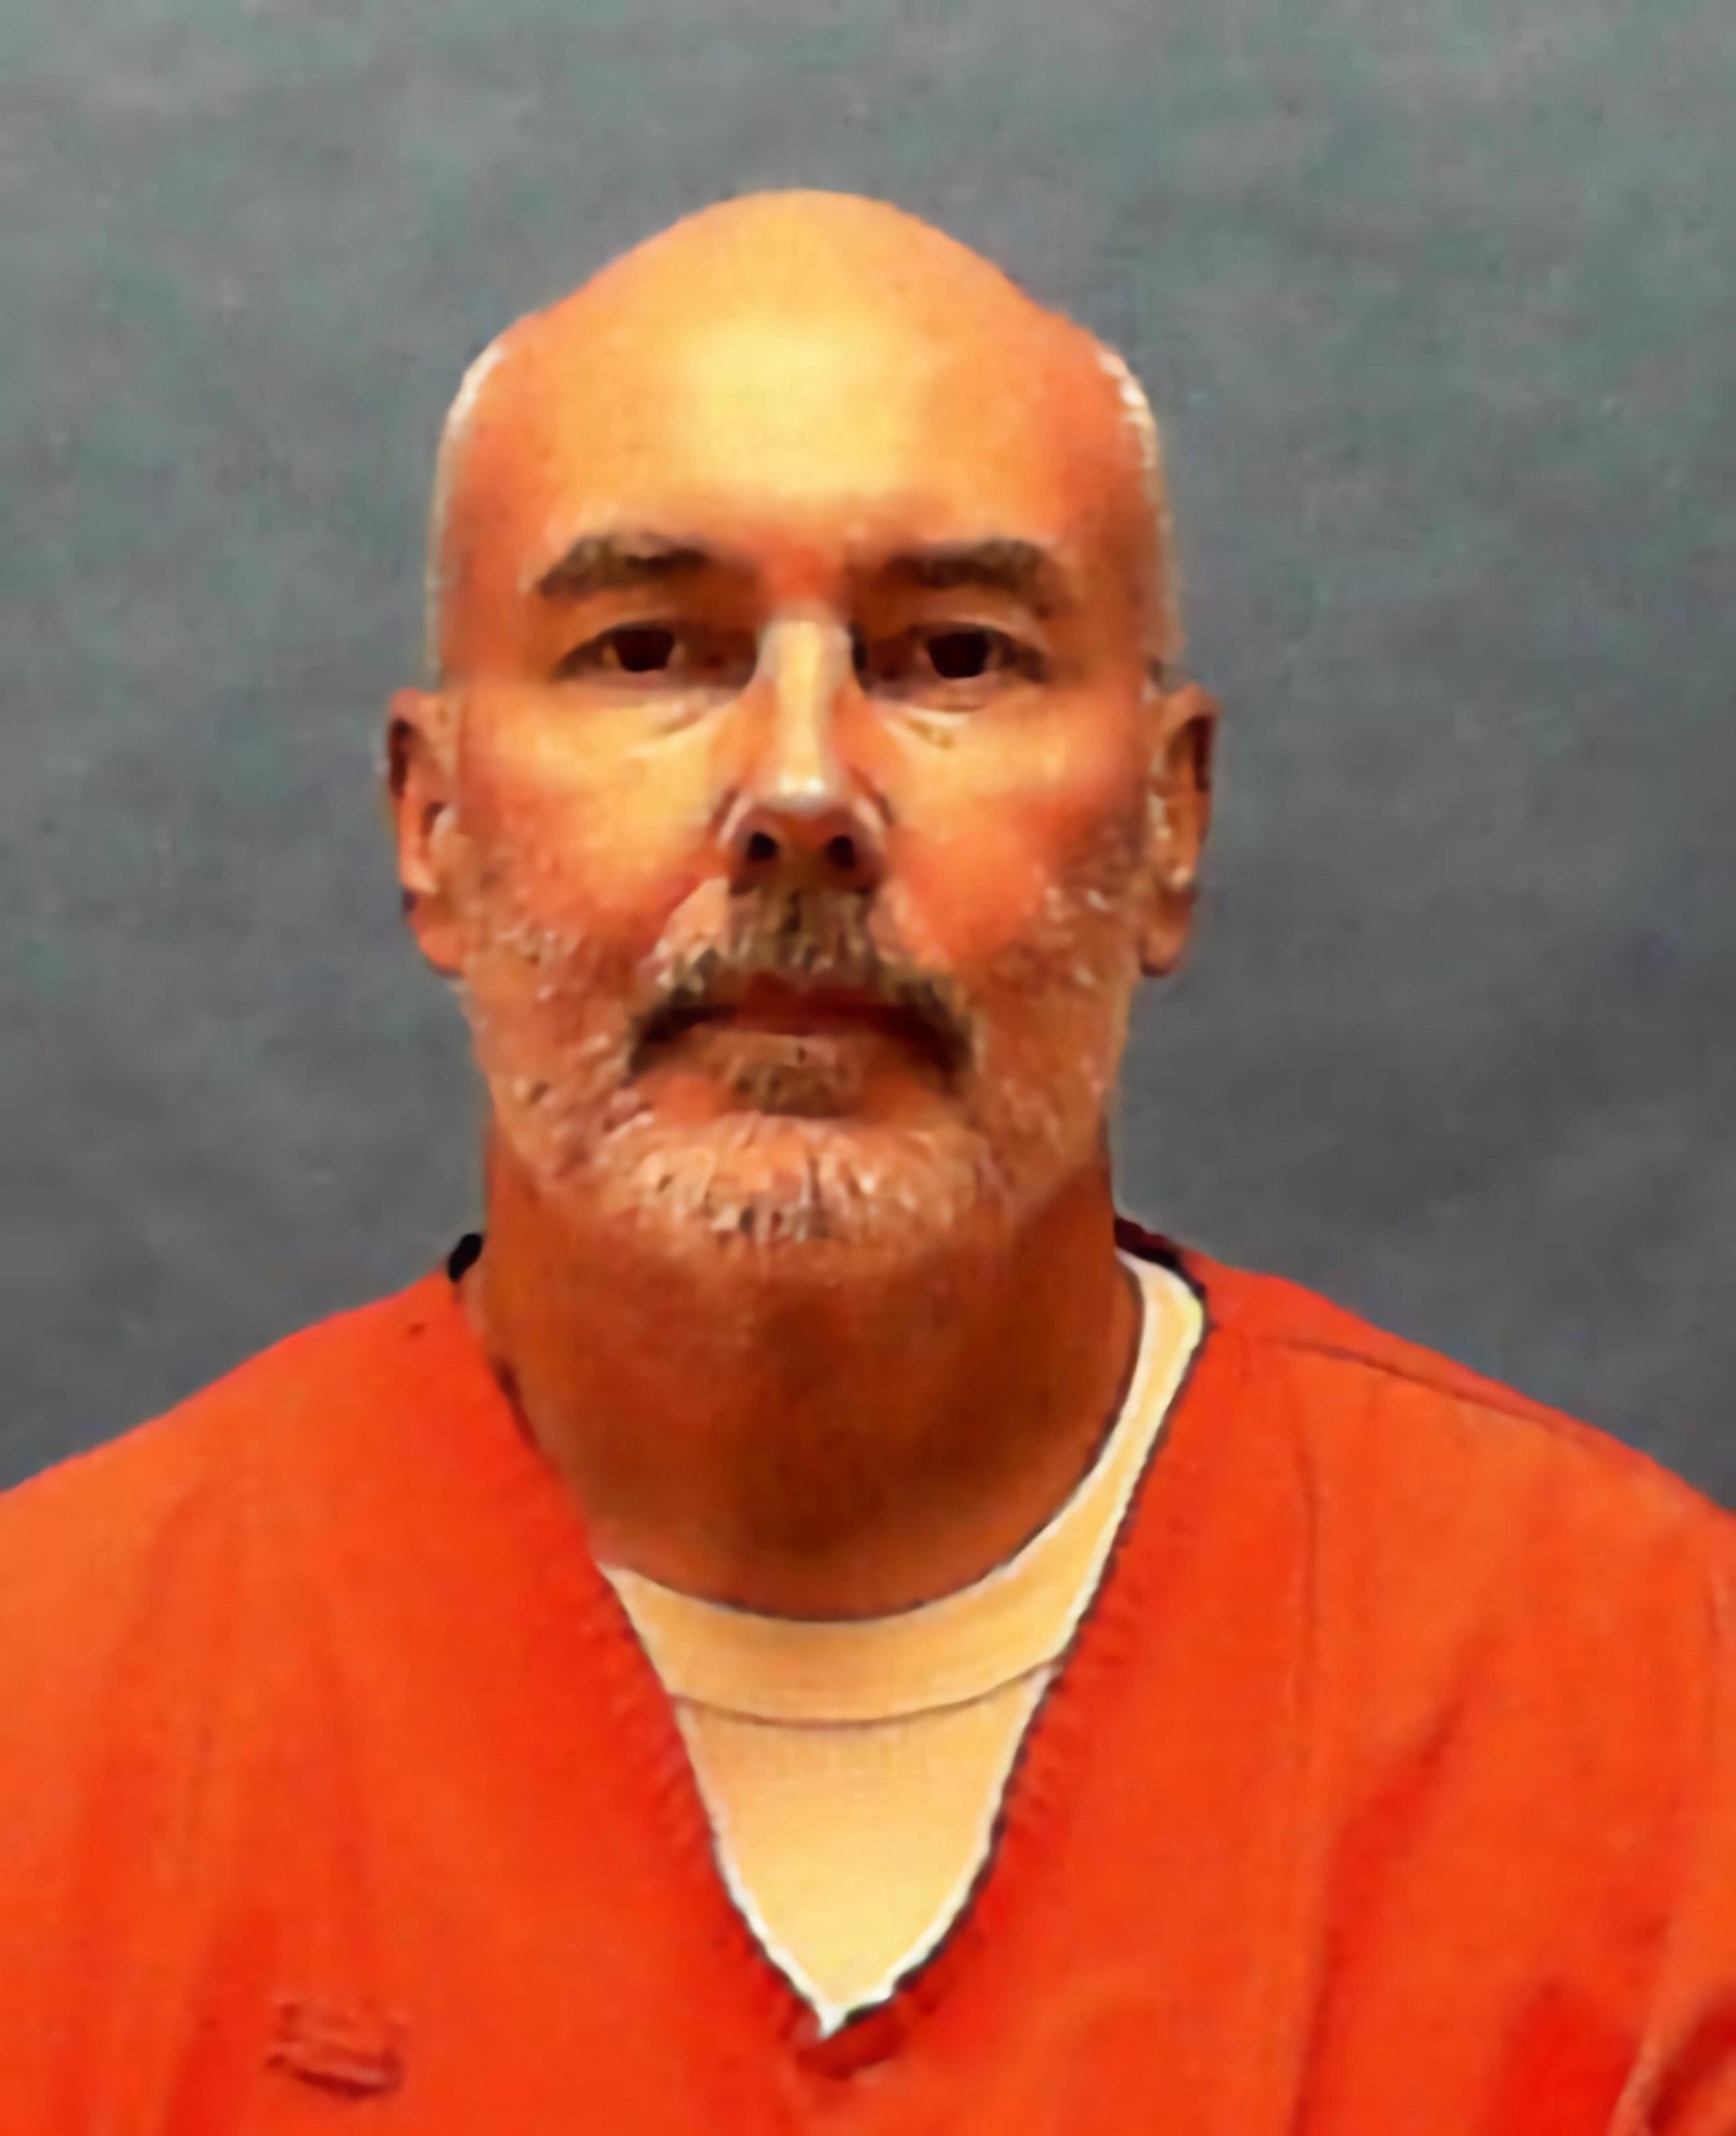 Fotografía divulgada por el Departamento de Correcciones de Florida donde aparece Donald David Dillbeck.